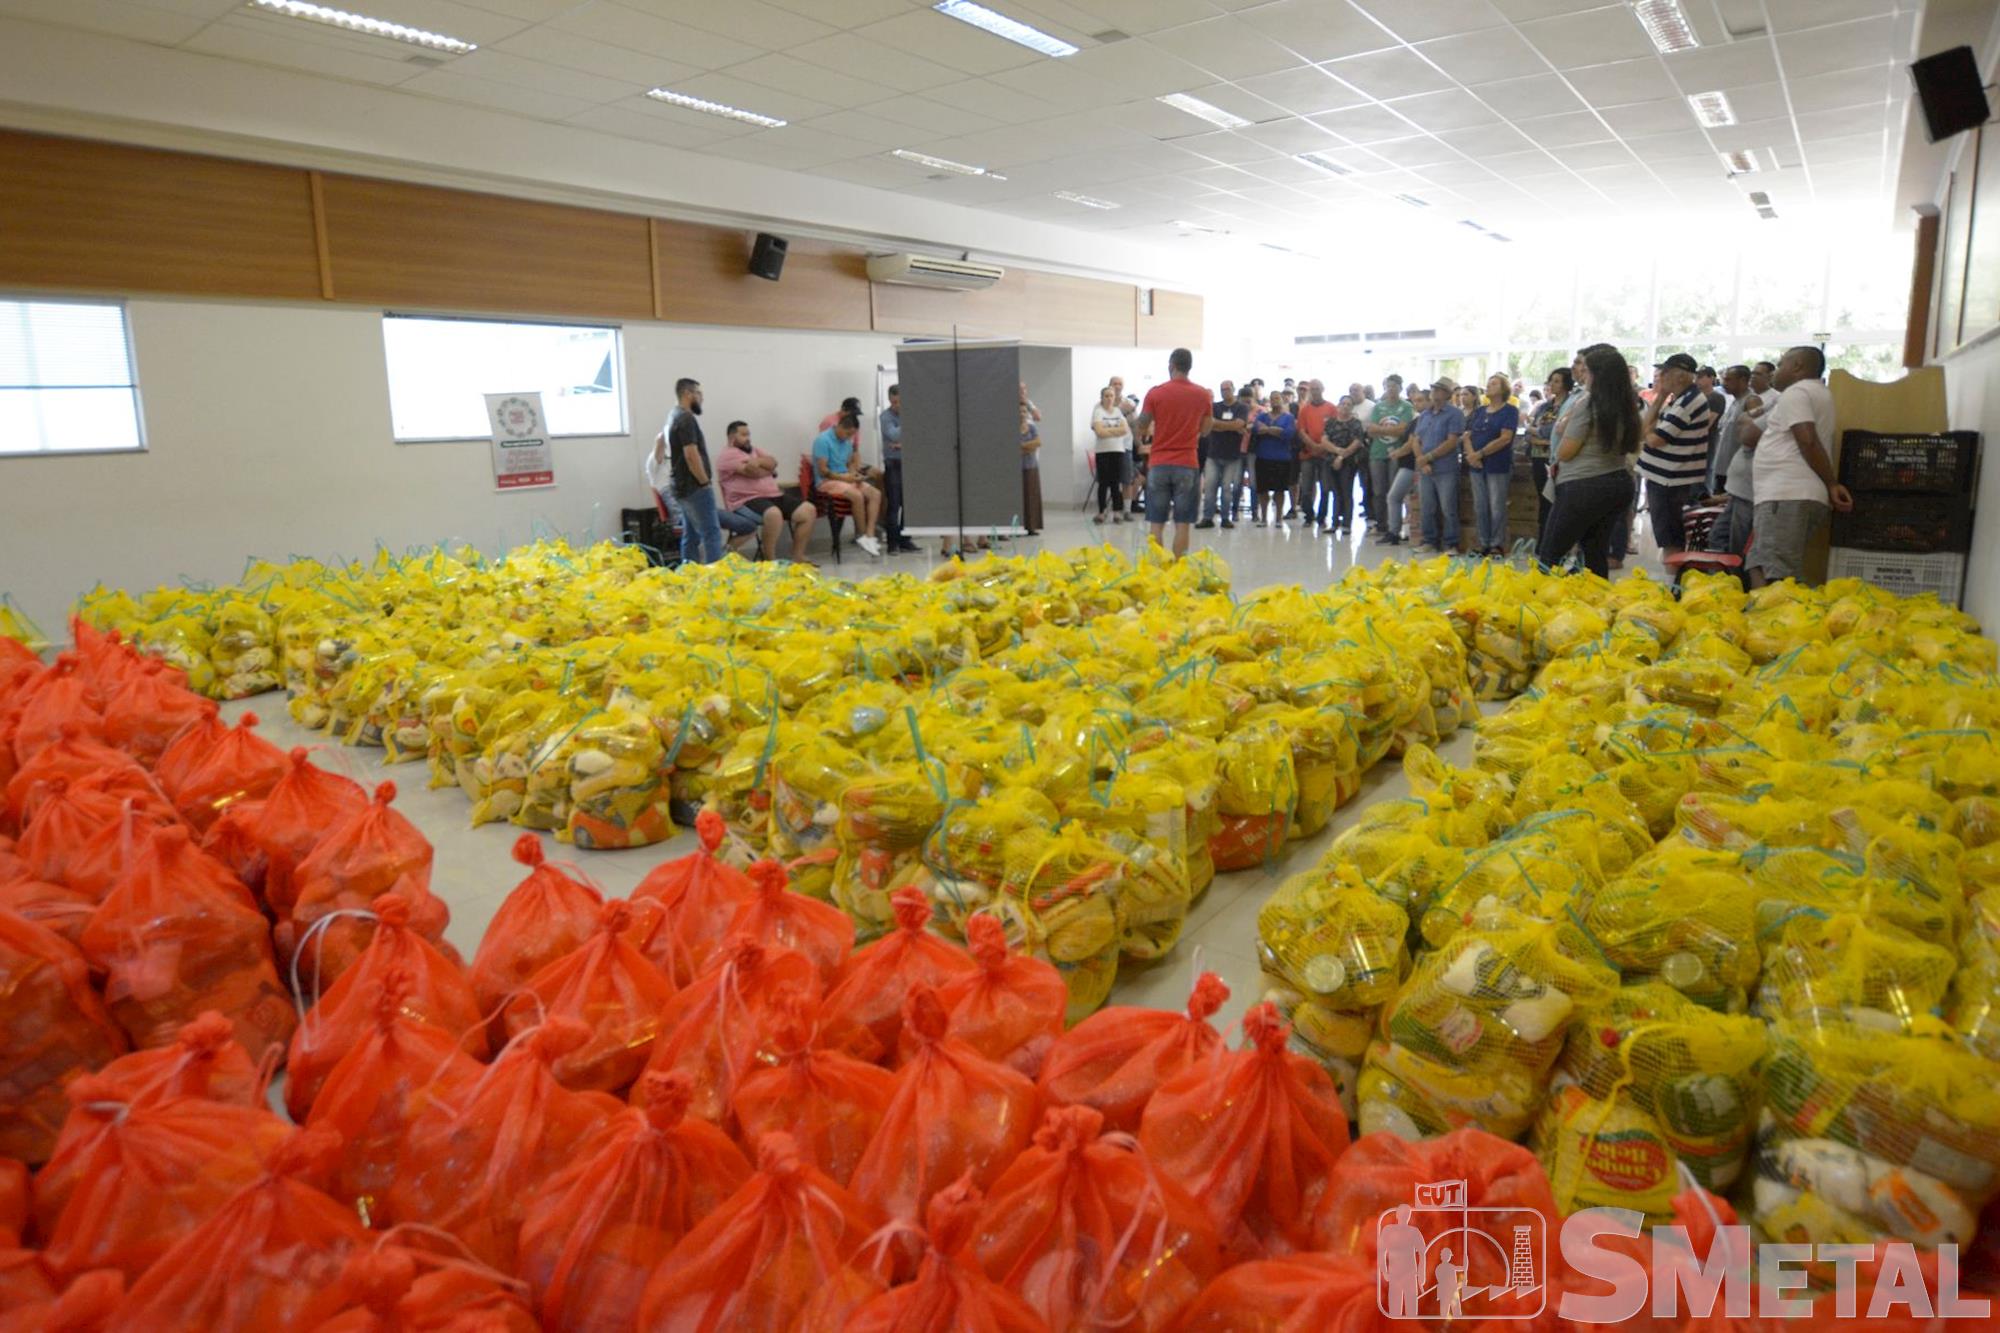 Foguinho/Smetal, Natal Sem Fome distribui 27, 5 toneladas de alimentos a famílias carentes